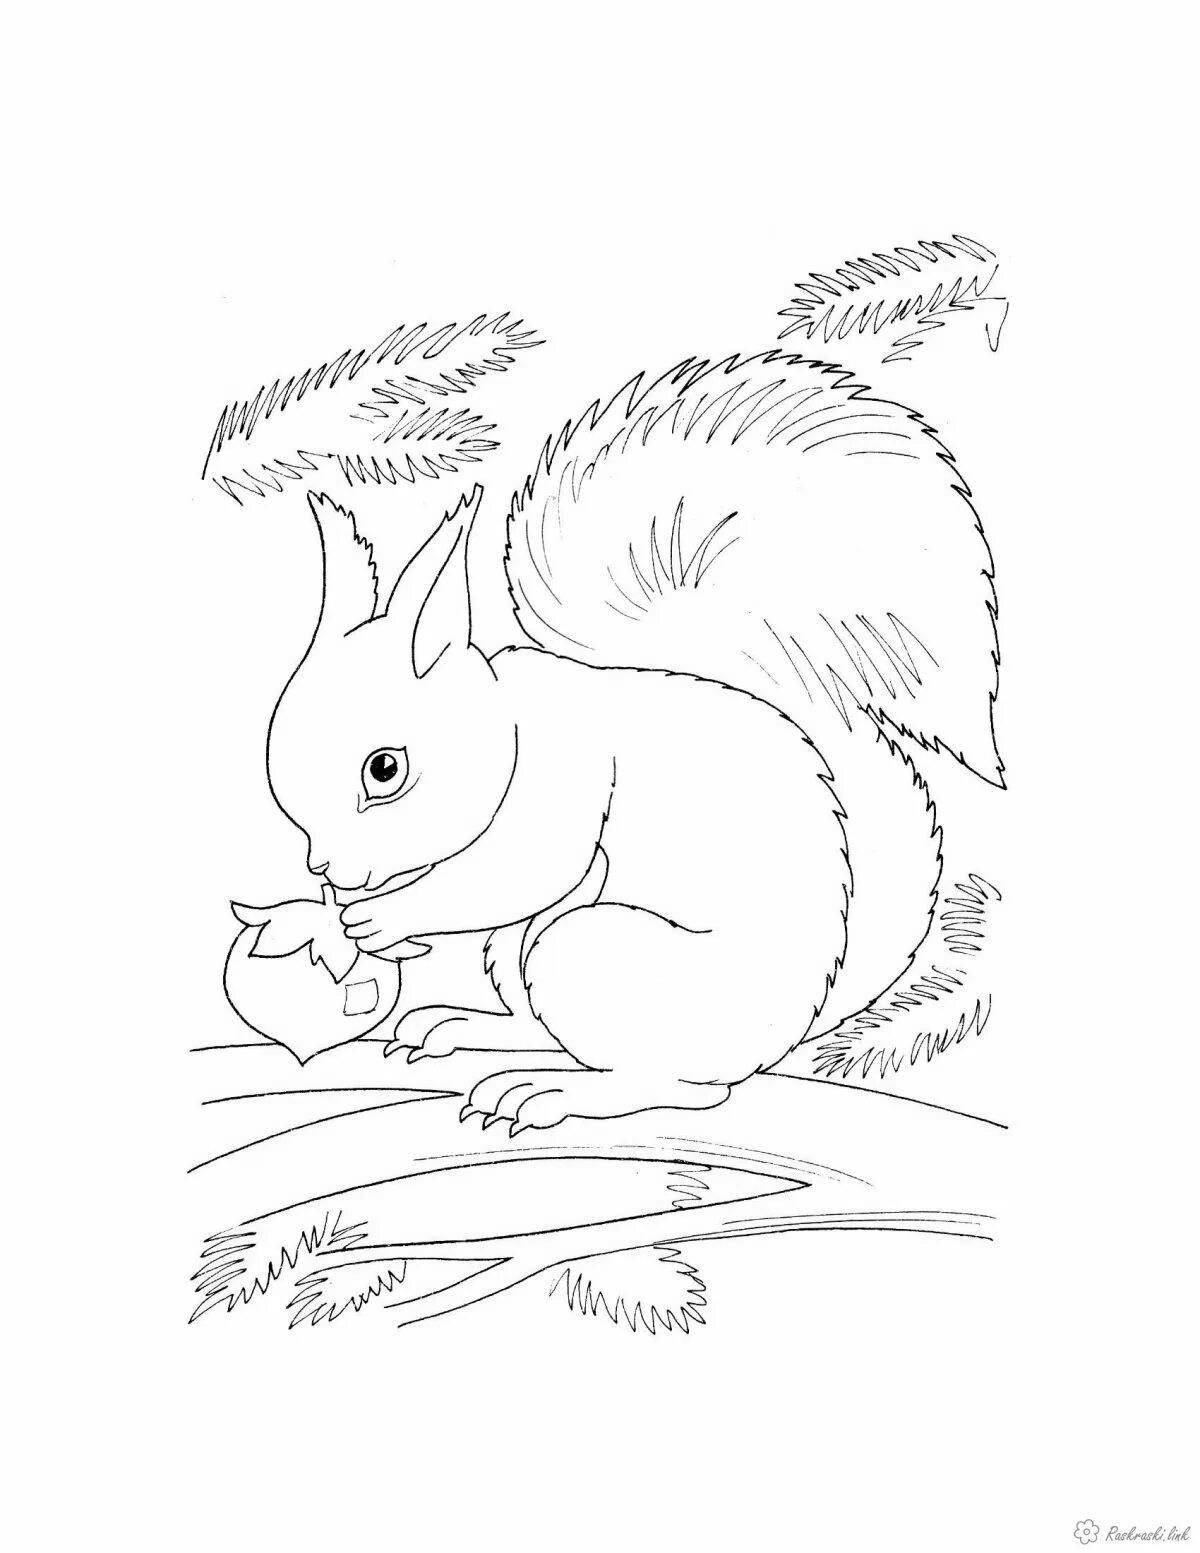 Squirrel fun coloring